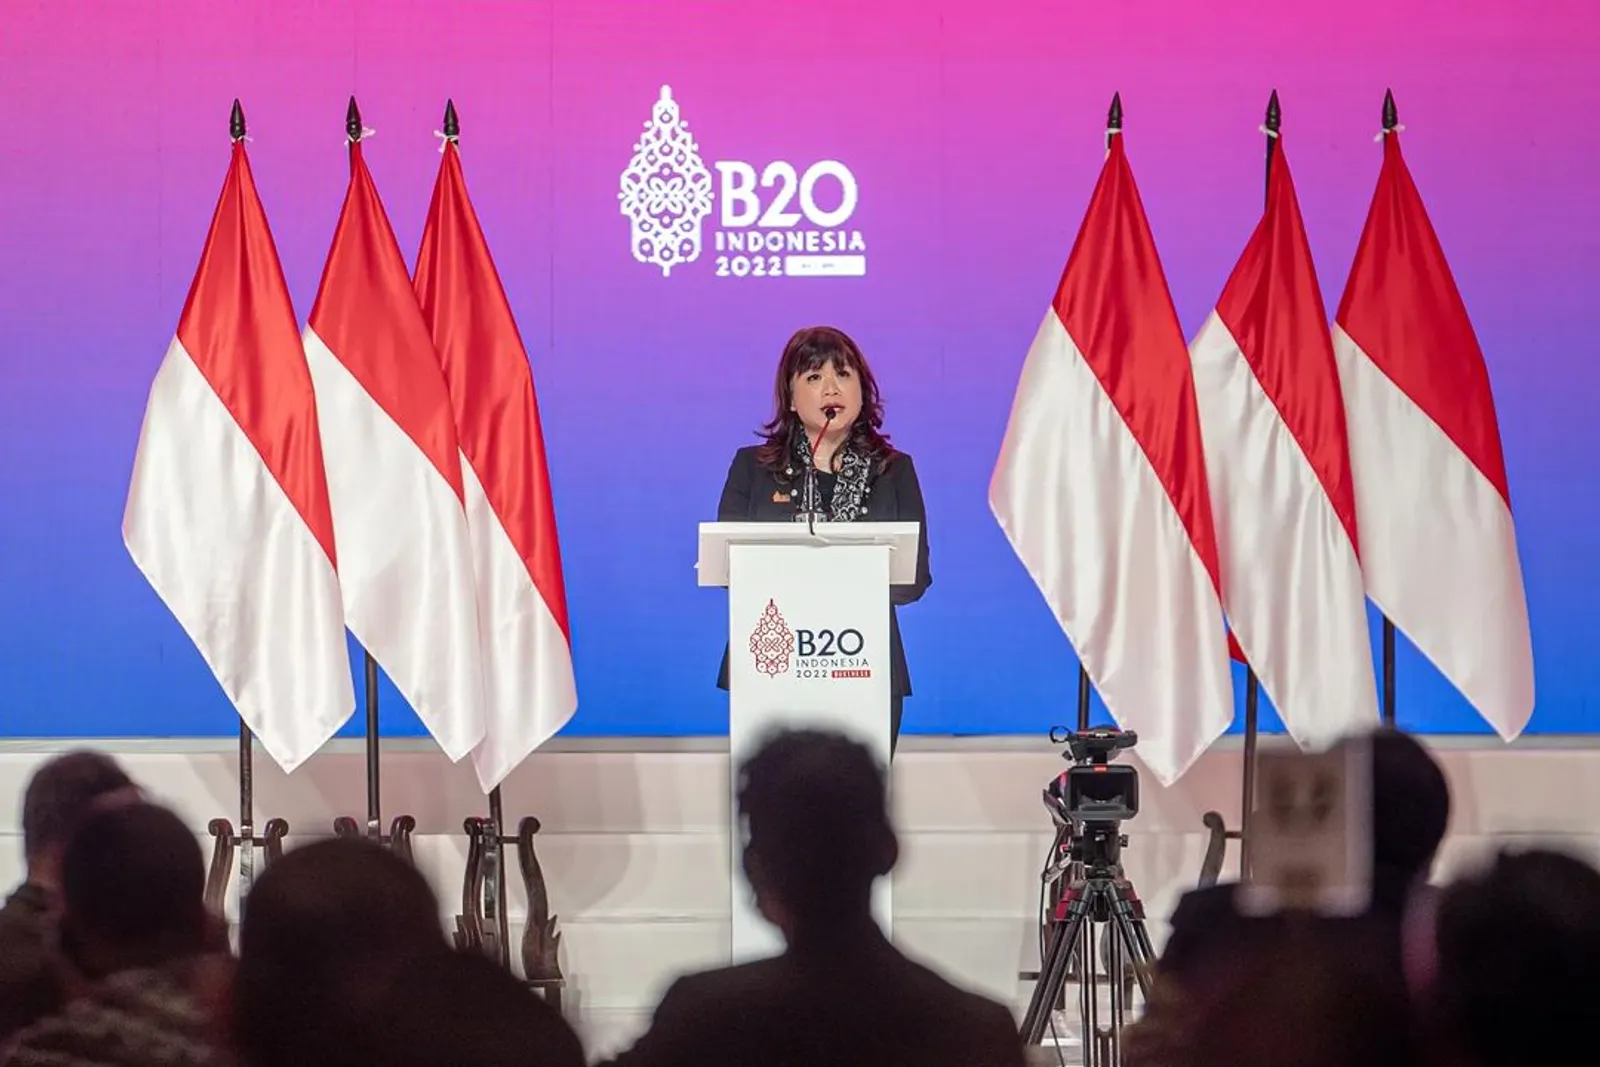 Mengenal Shinta Kamdani, Woman Leader dalam Presidensi B20 Indonesia